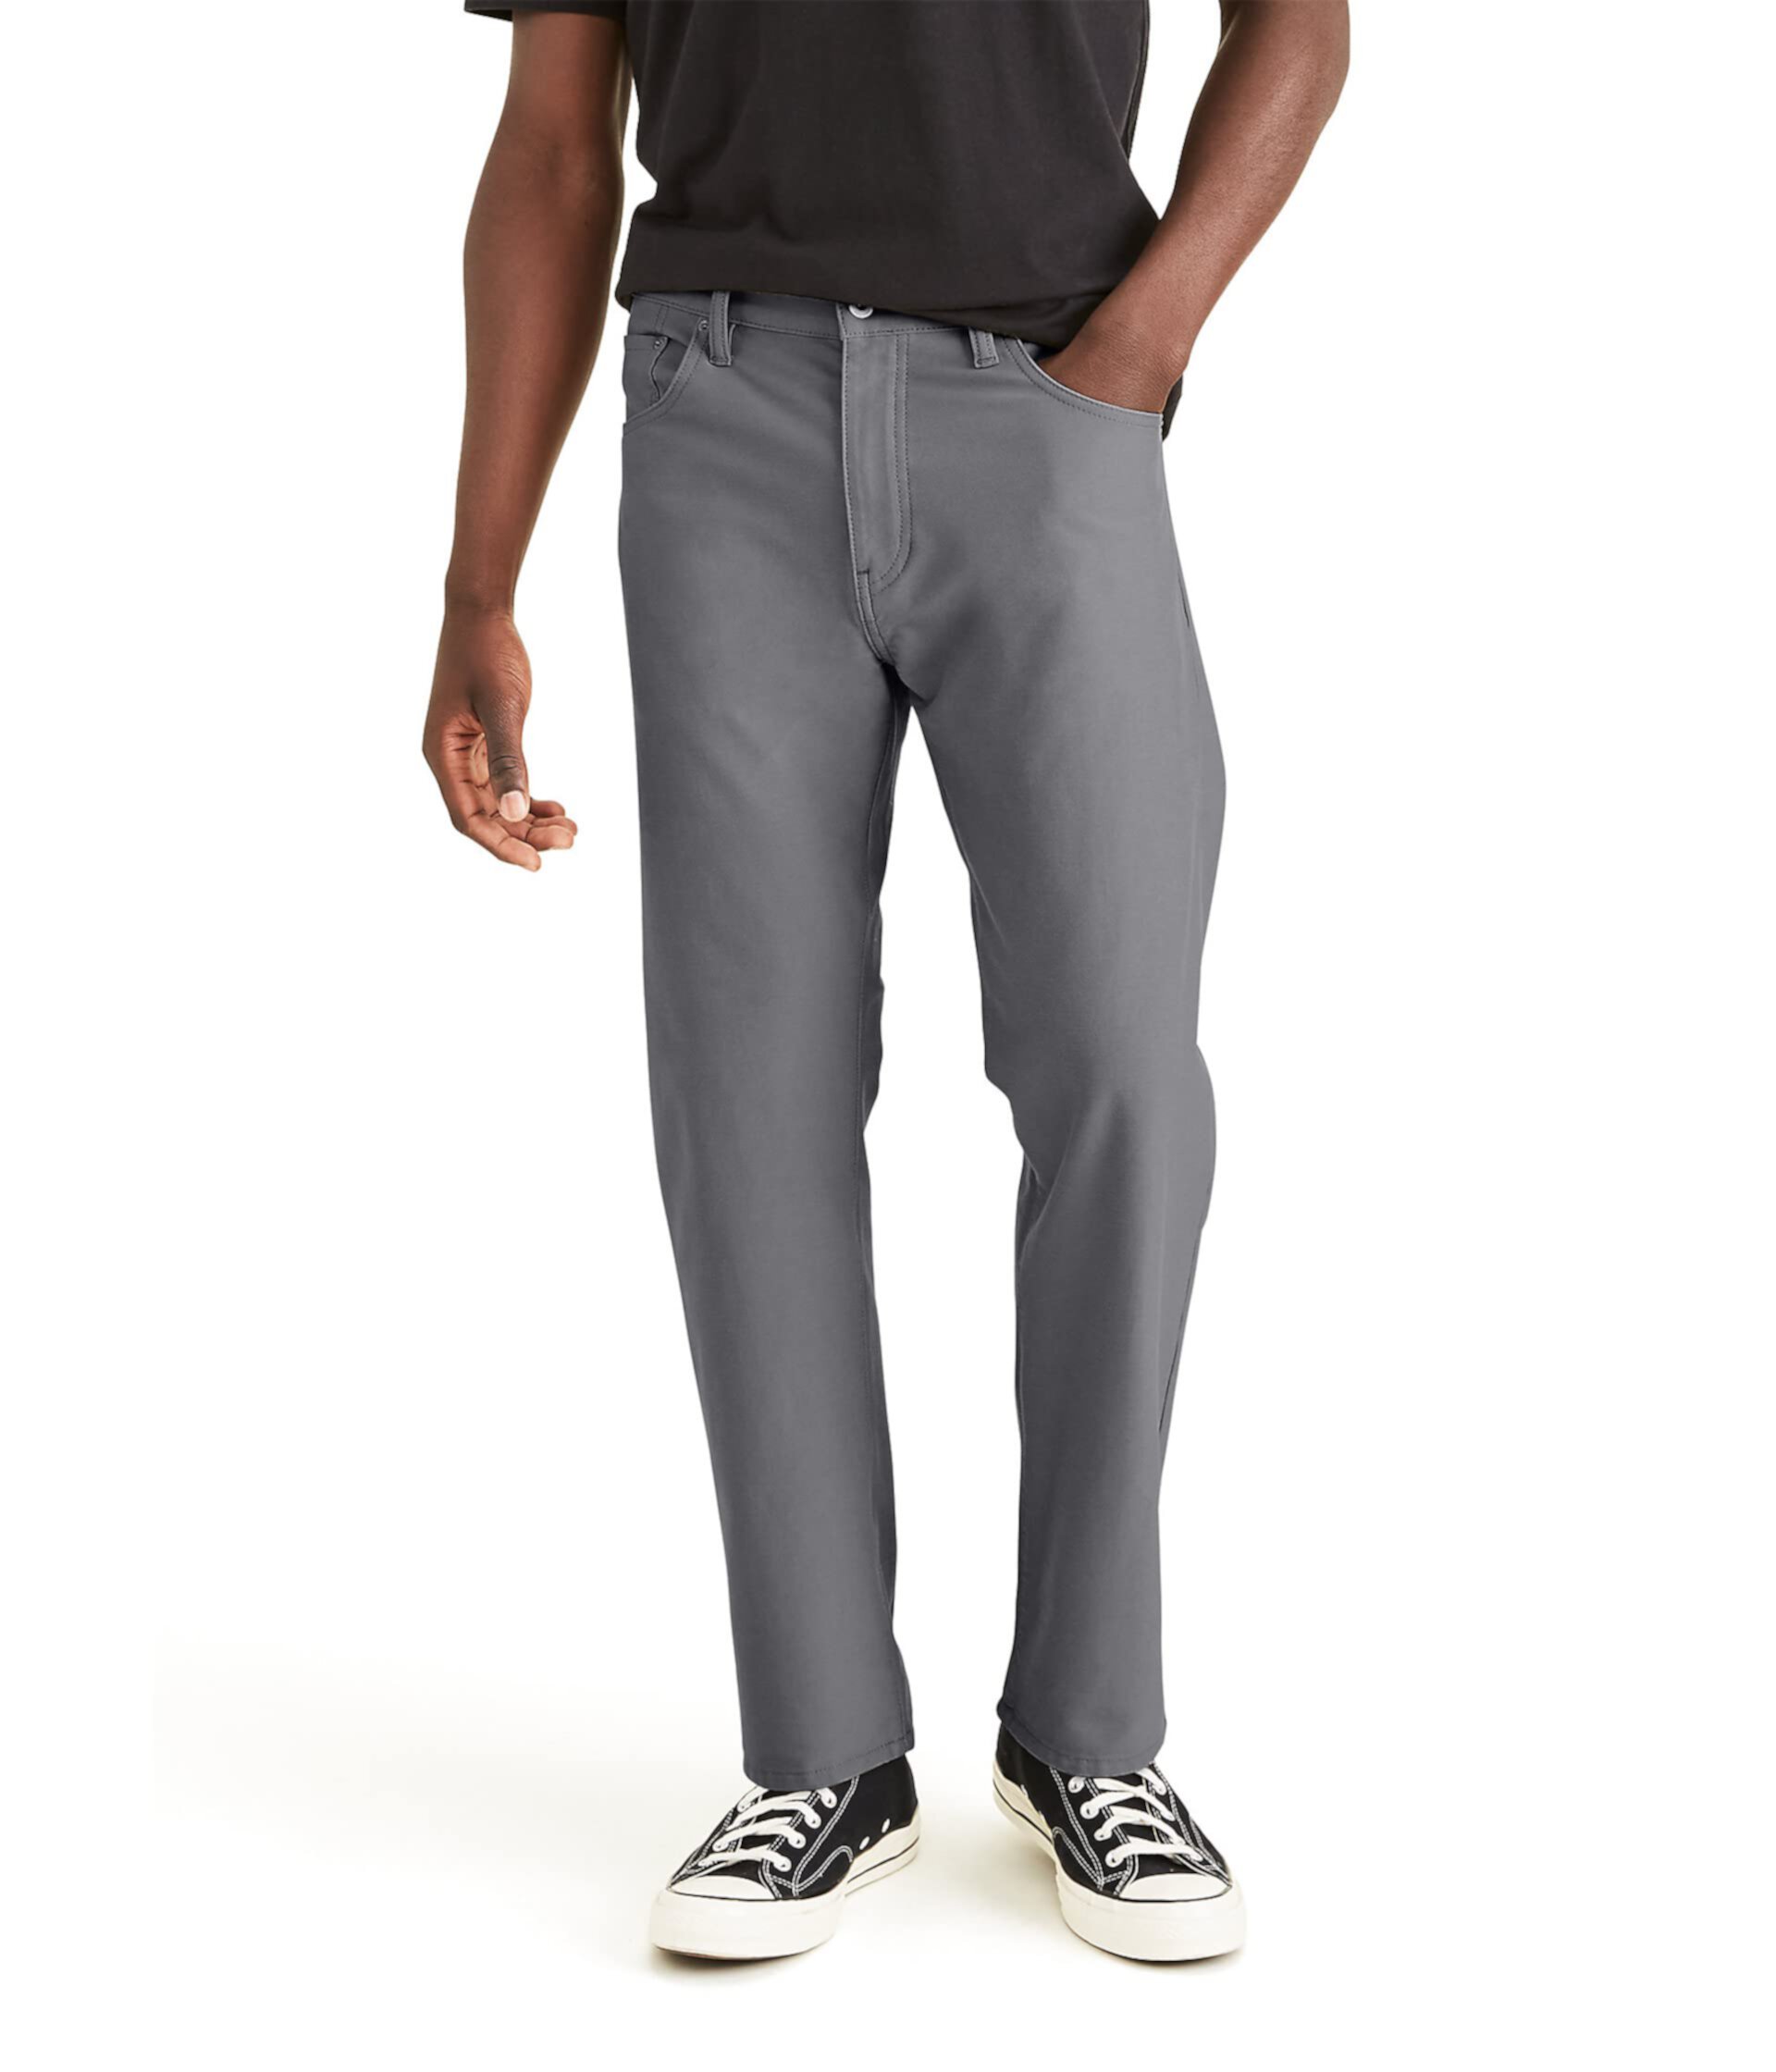 Комфортные трикотажные брюки прямого кроя Smart 360 Knit Jean Cut Dockers